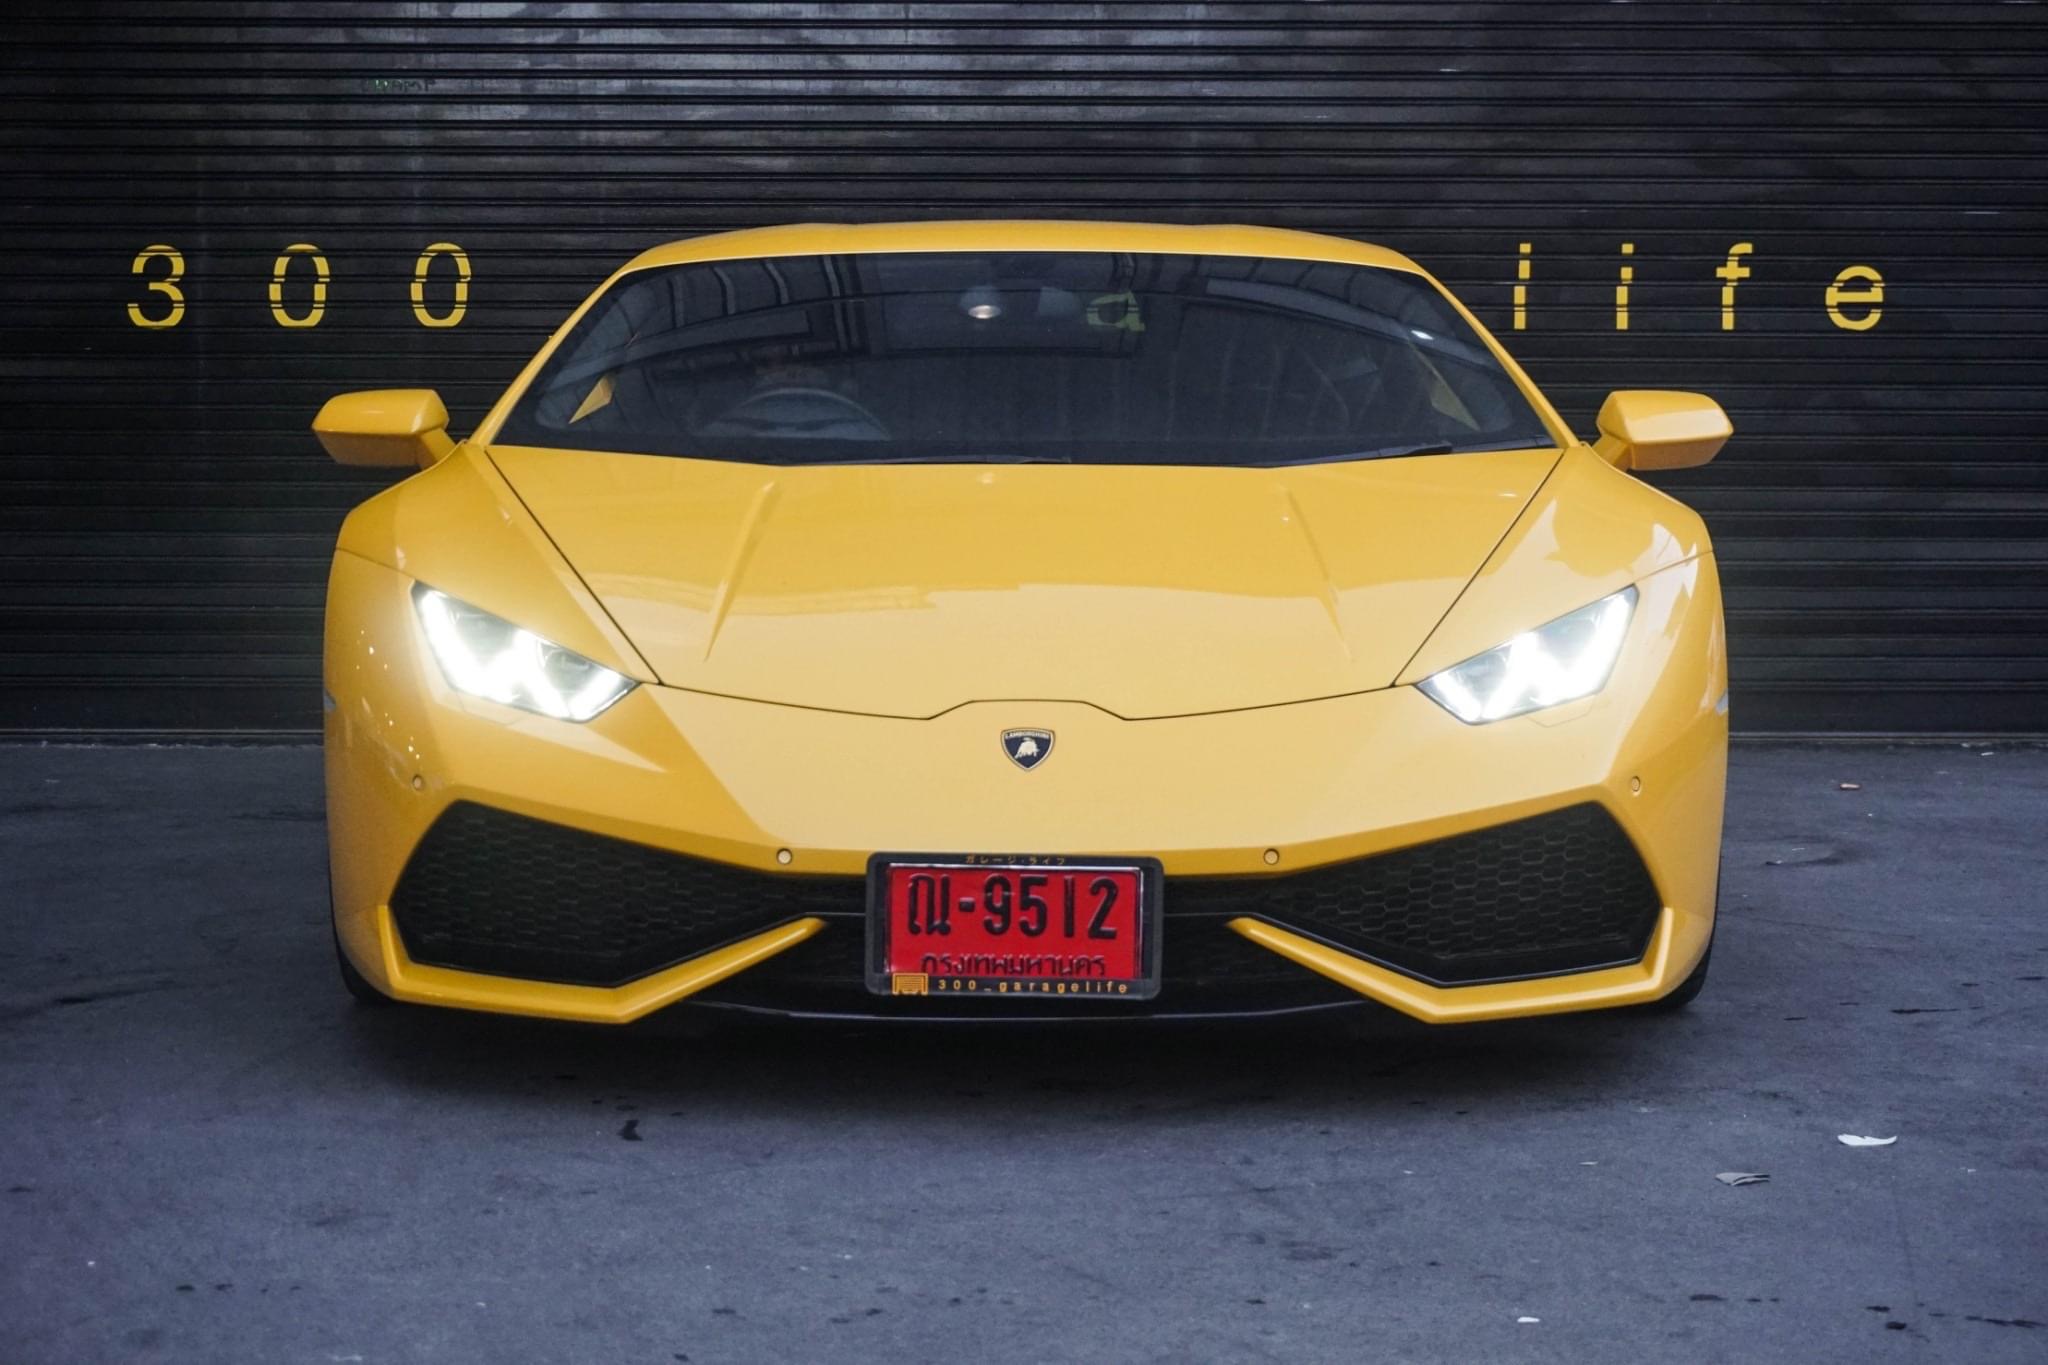 Lamborghini Huracan ปี 2016 สีเหลือง